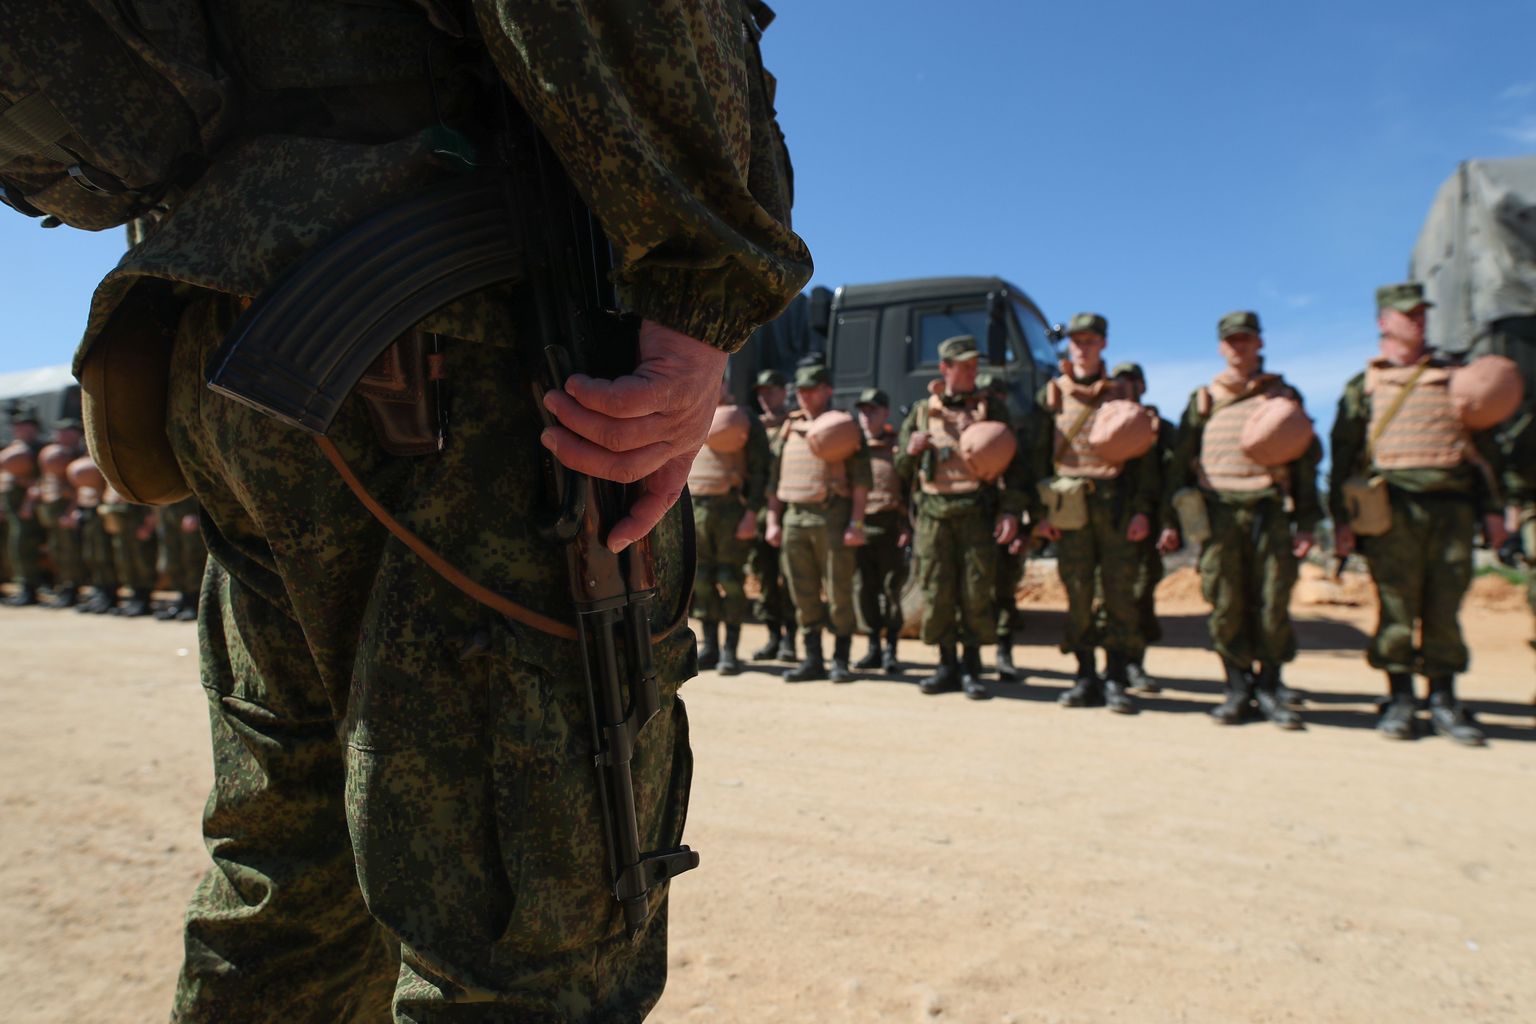 Venemaa armeeüksus Süürias Hmeimimi õhujõudude baasis